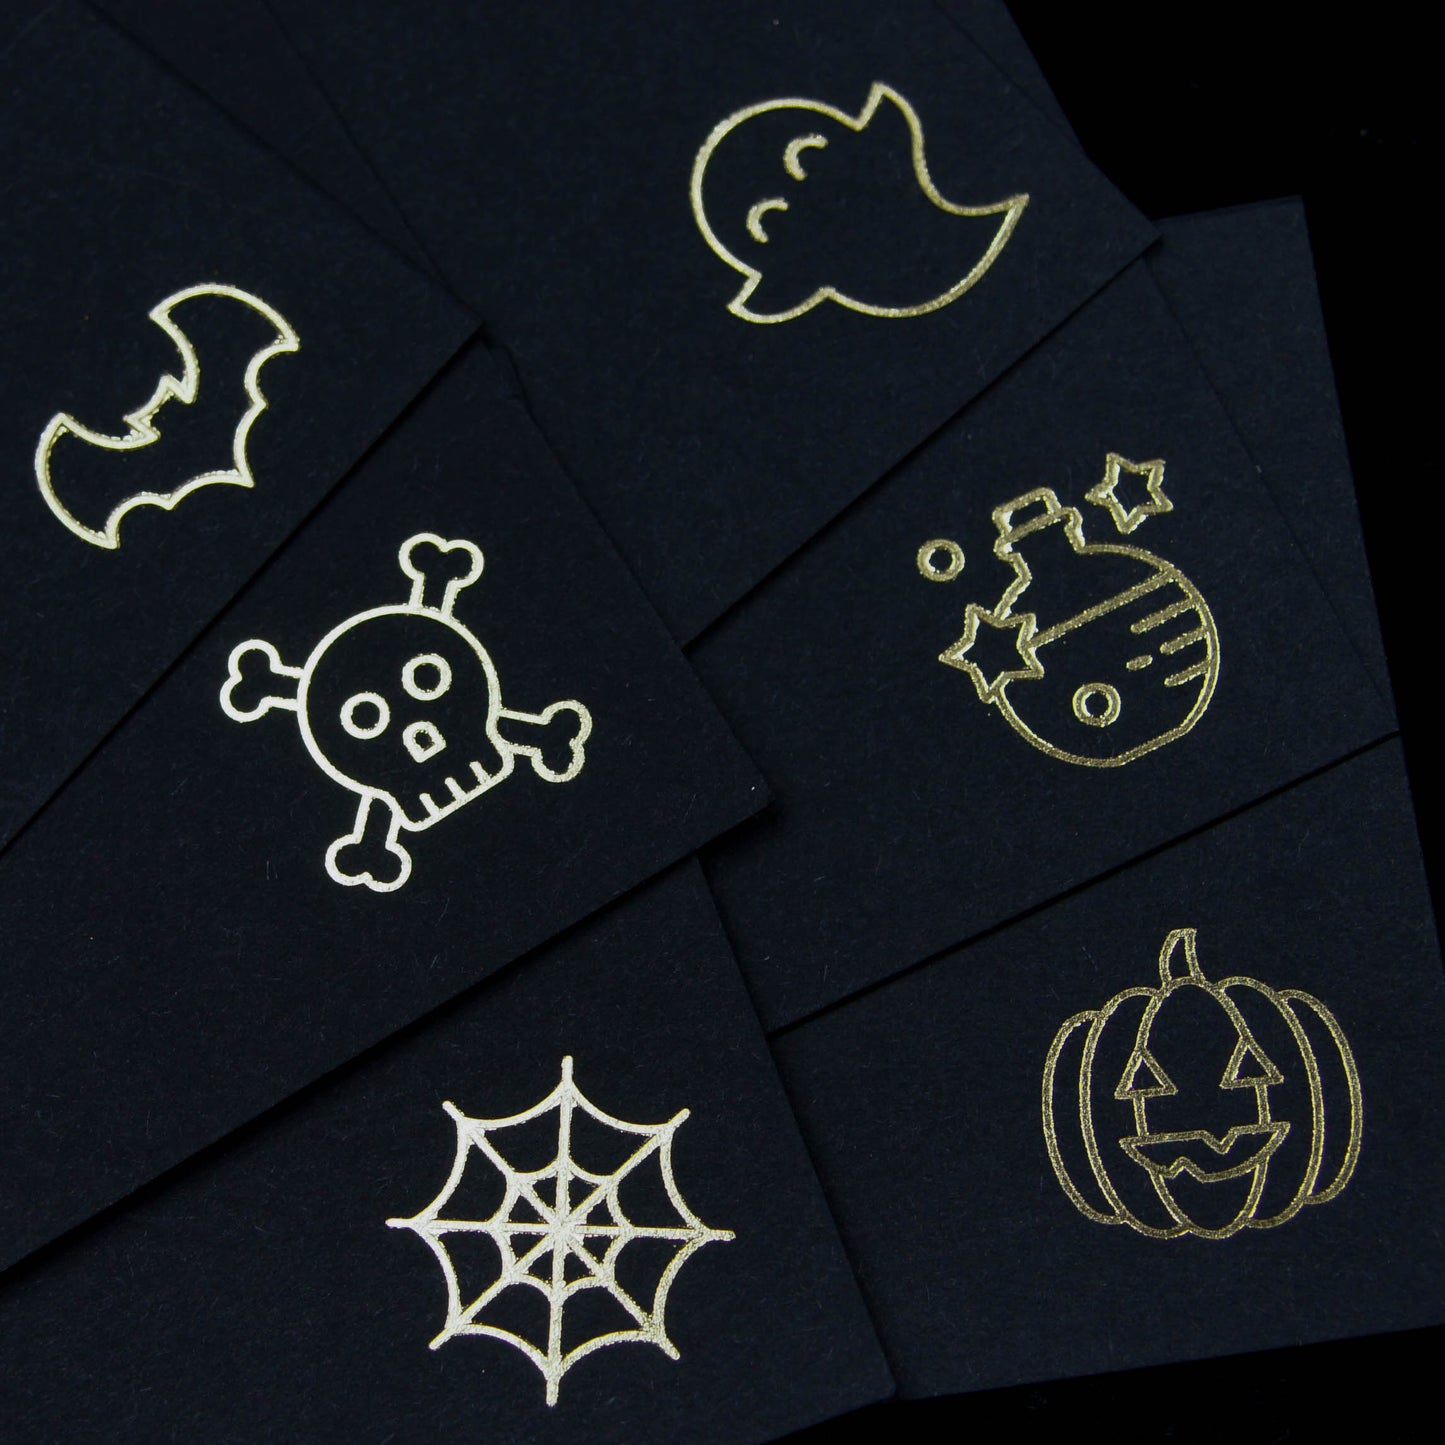 Gothic Icon Thank You Notecards & Envelopes | Elegantly Gothic